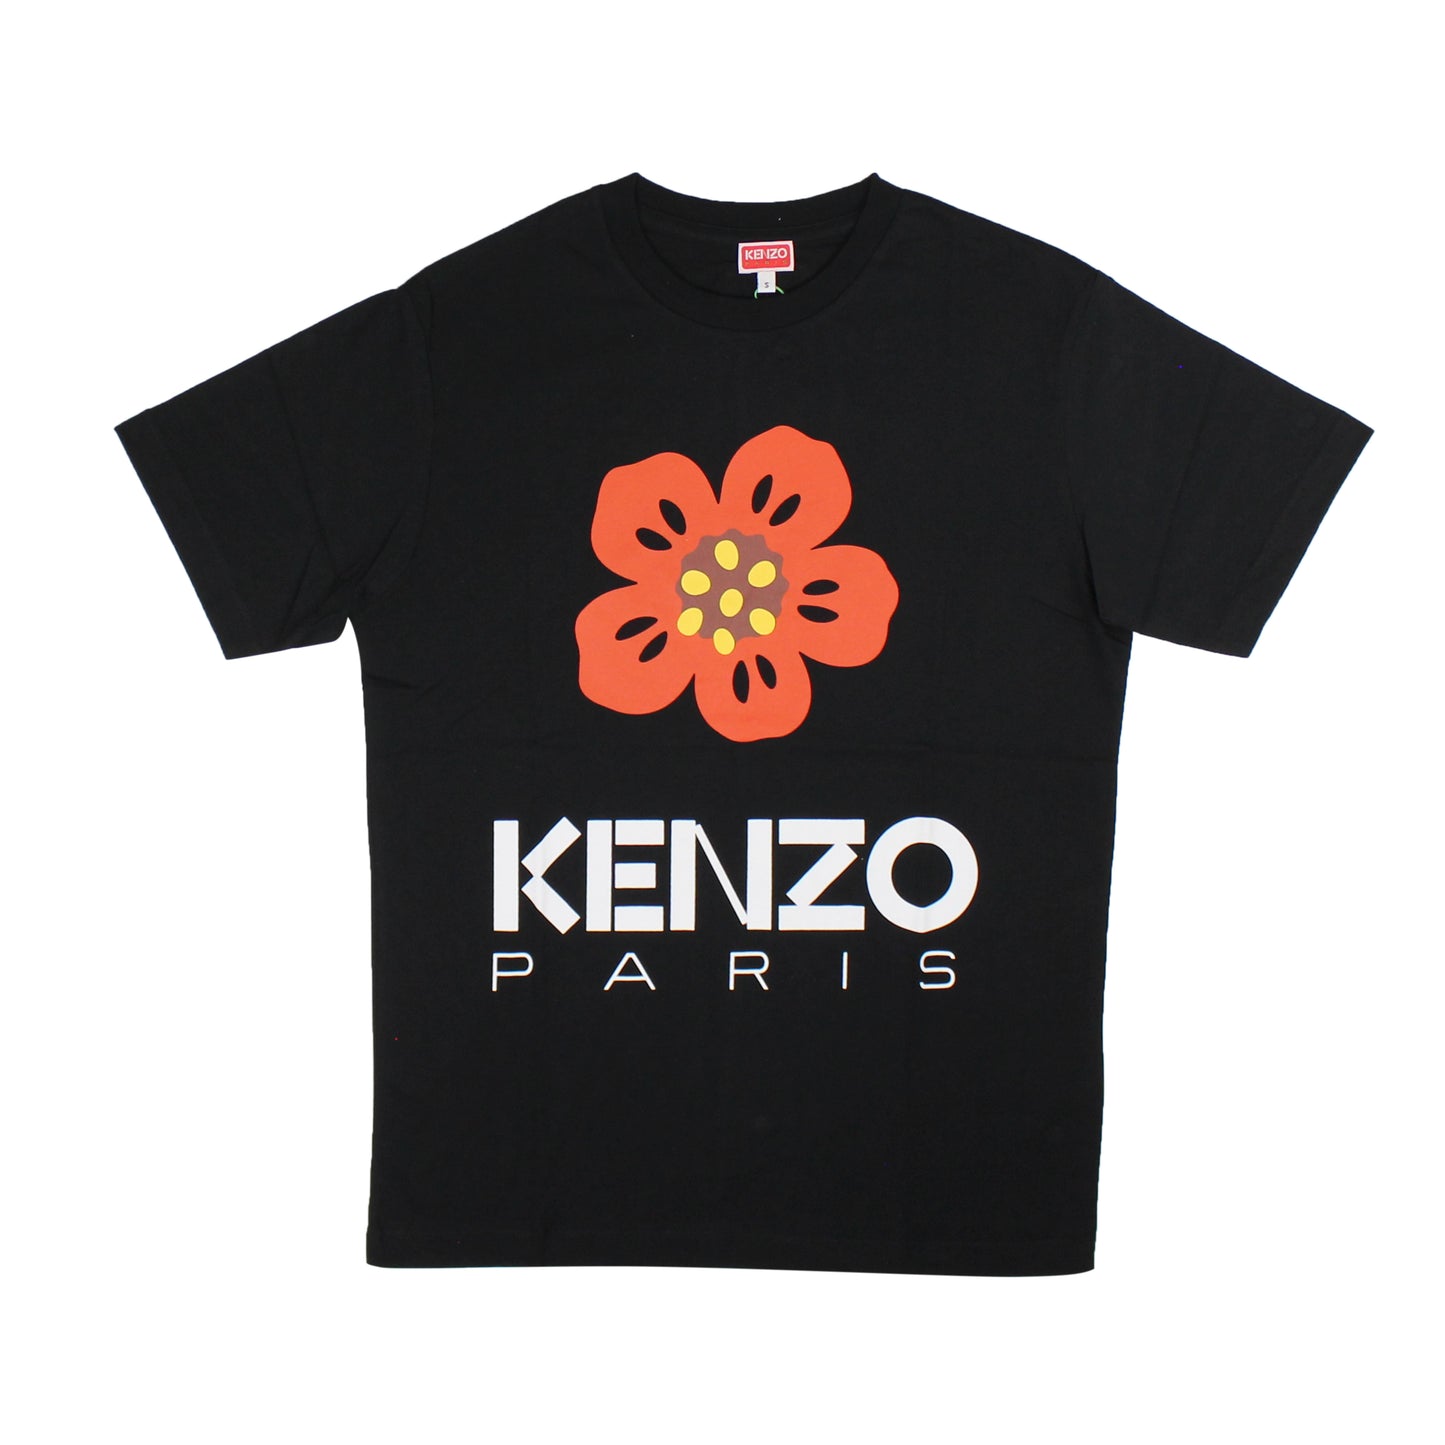 Kenzo Paris Small Flower T-Shirt - Black